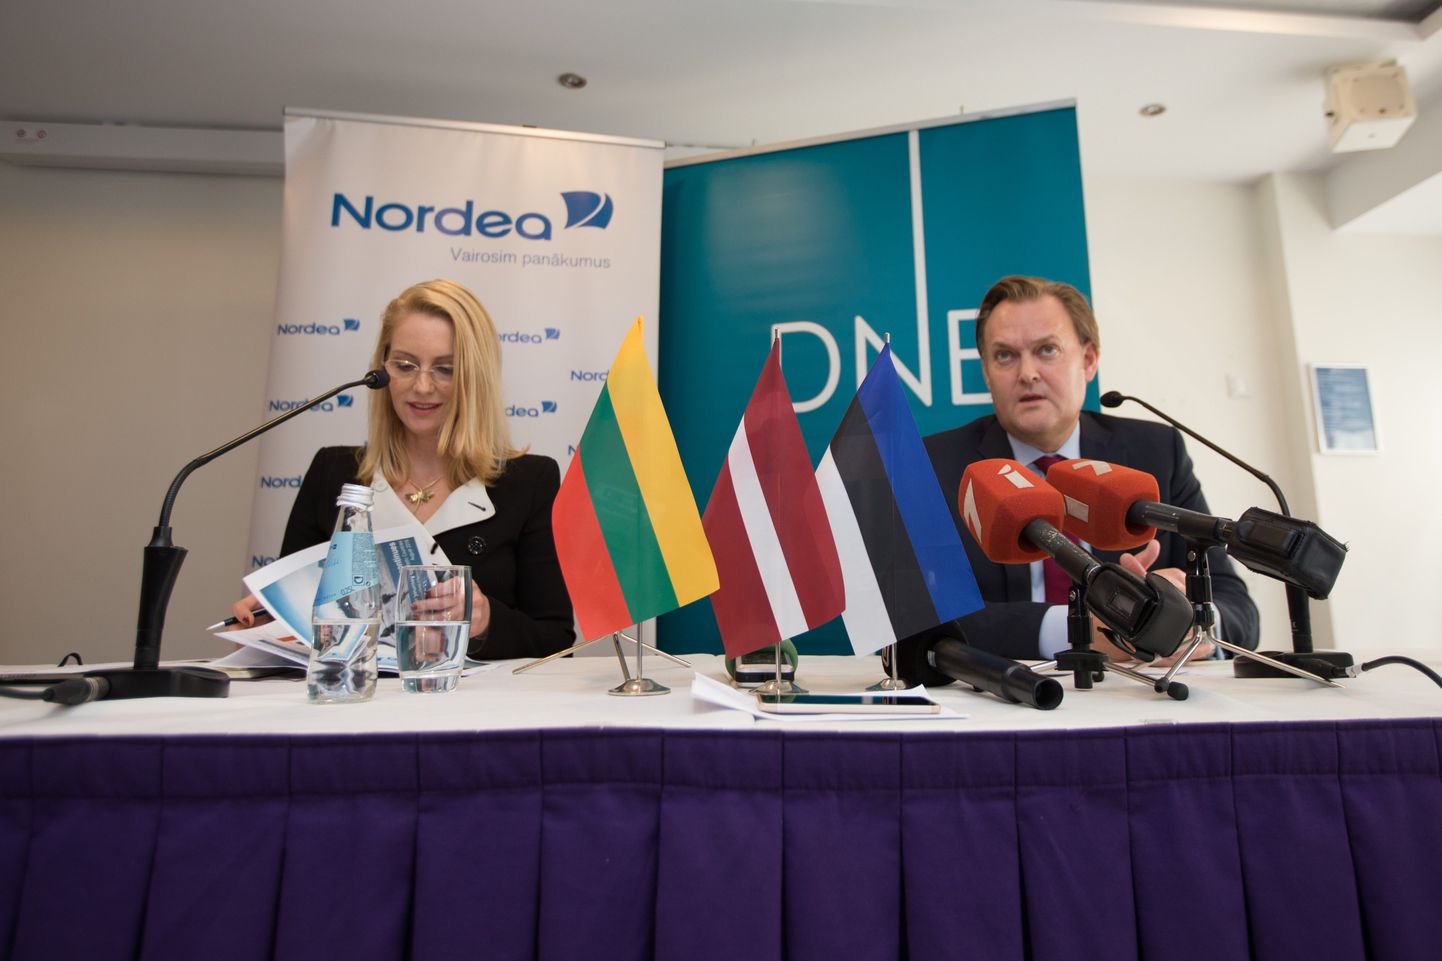 DNB ja Nordea ühinemise pressikonvernets.